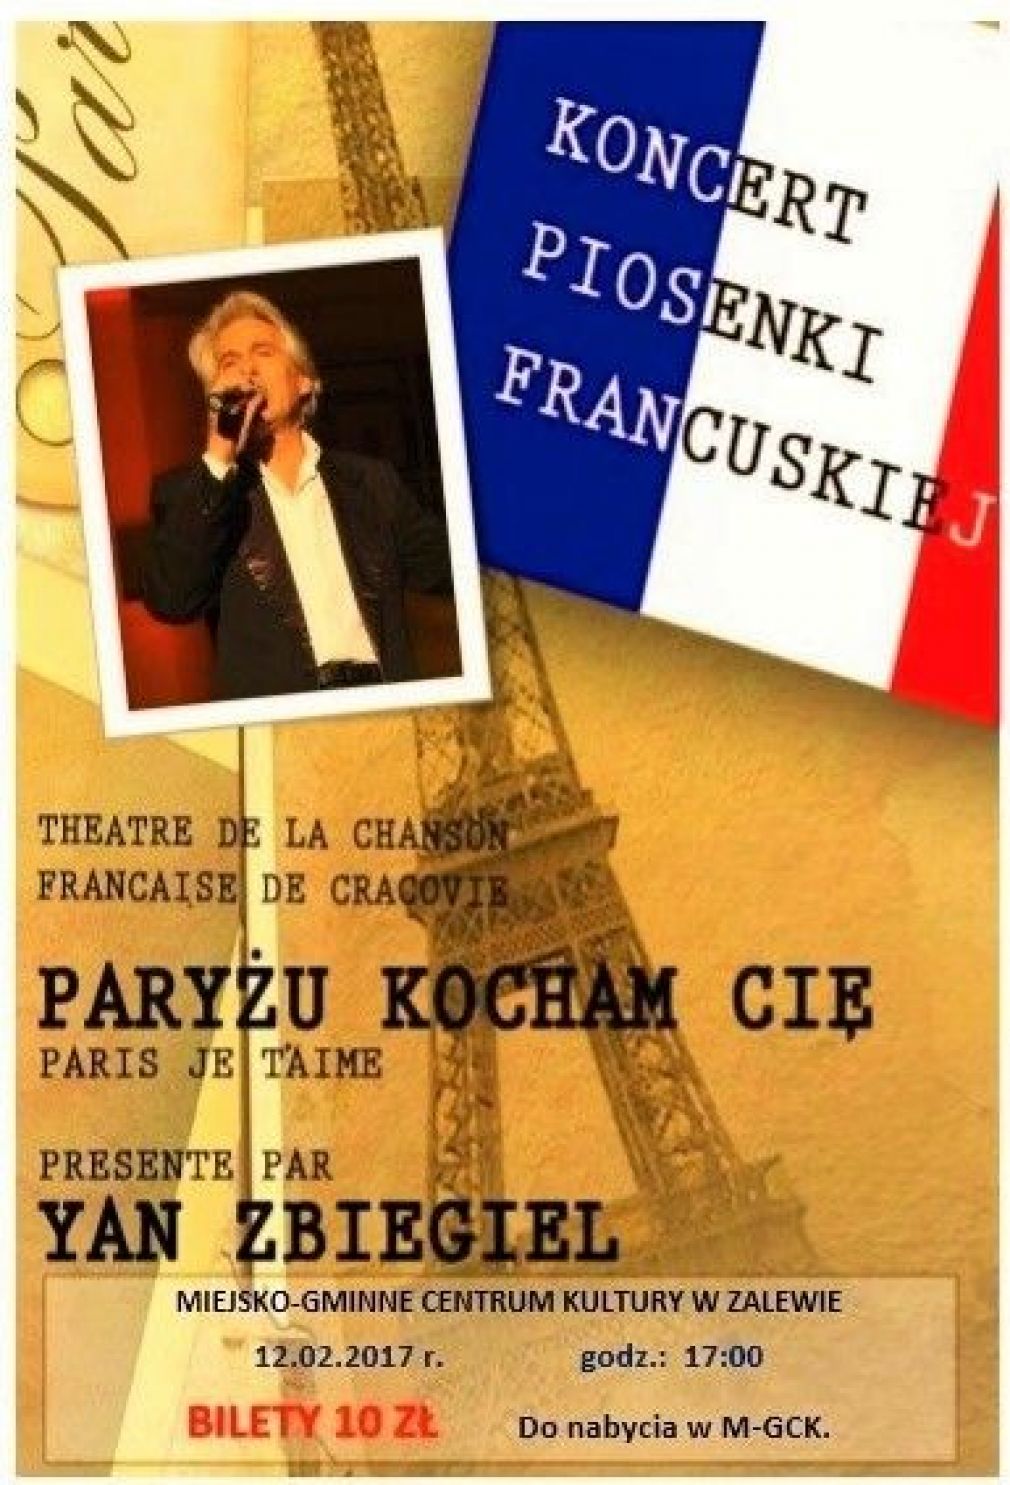 Koncert Piosenki Francuskiej w M-GCK w Zalewie